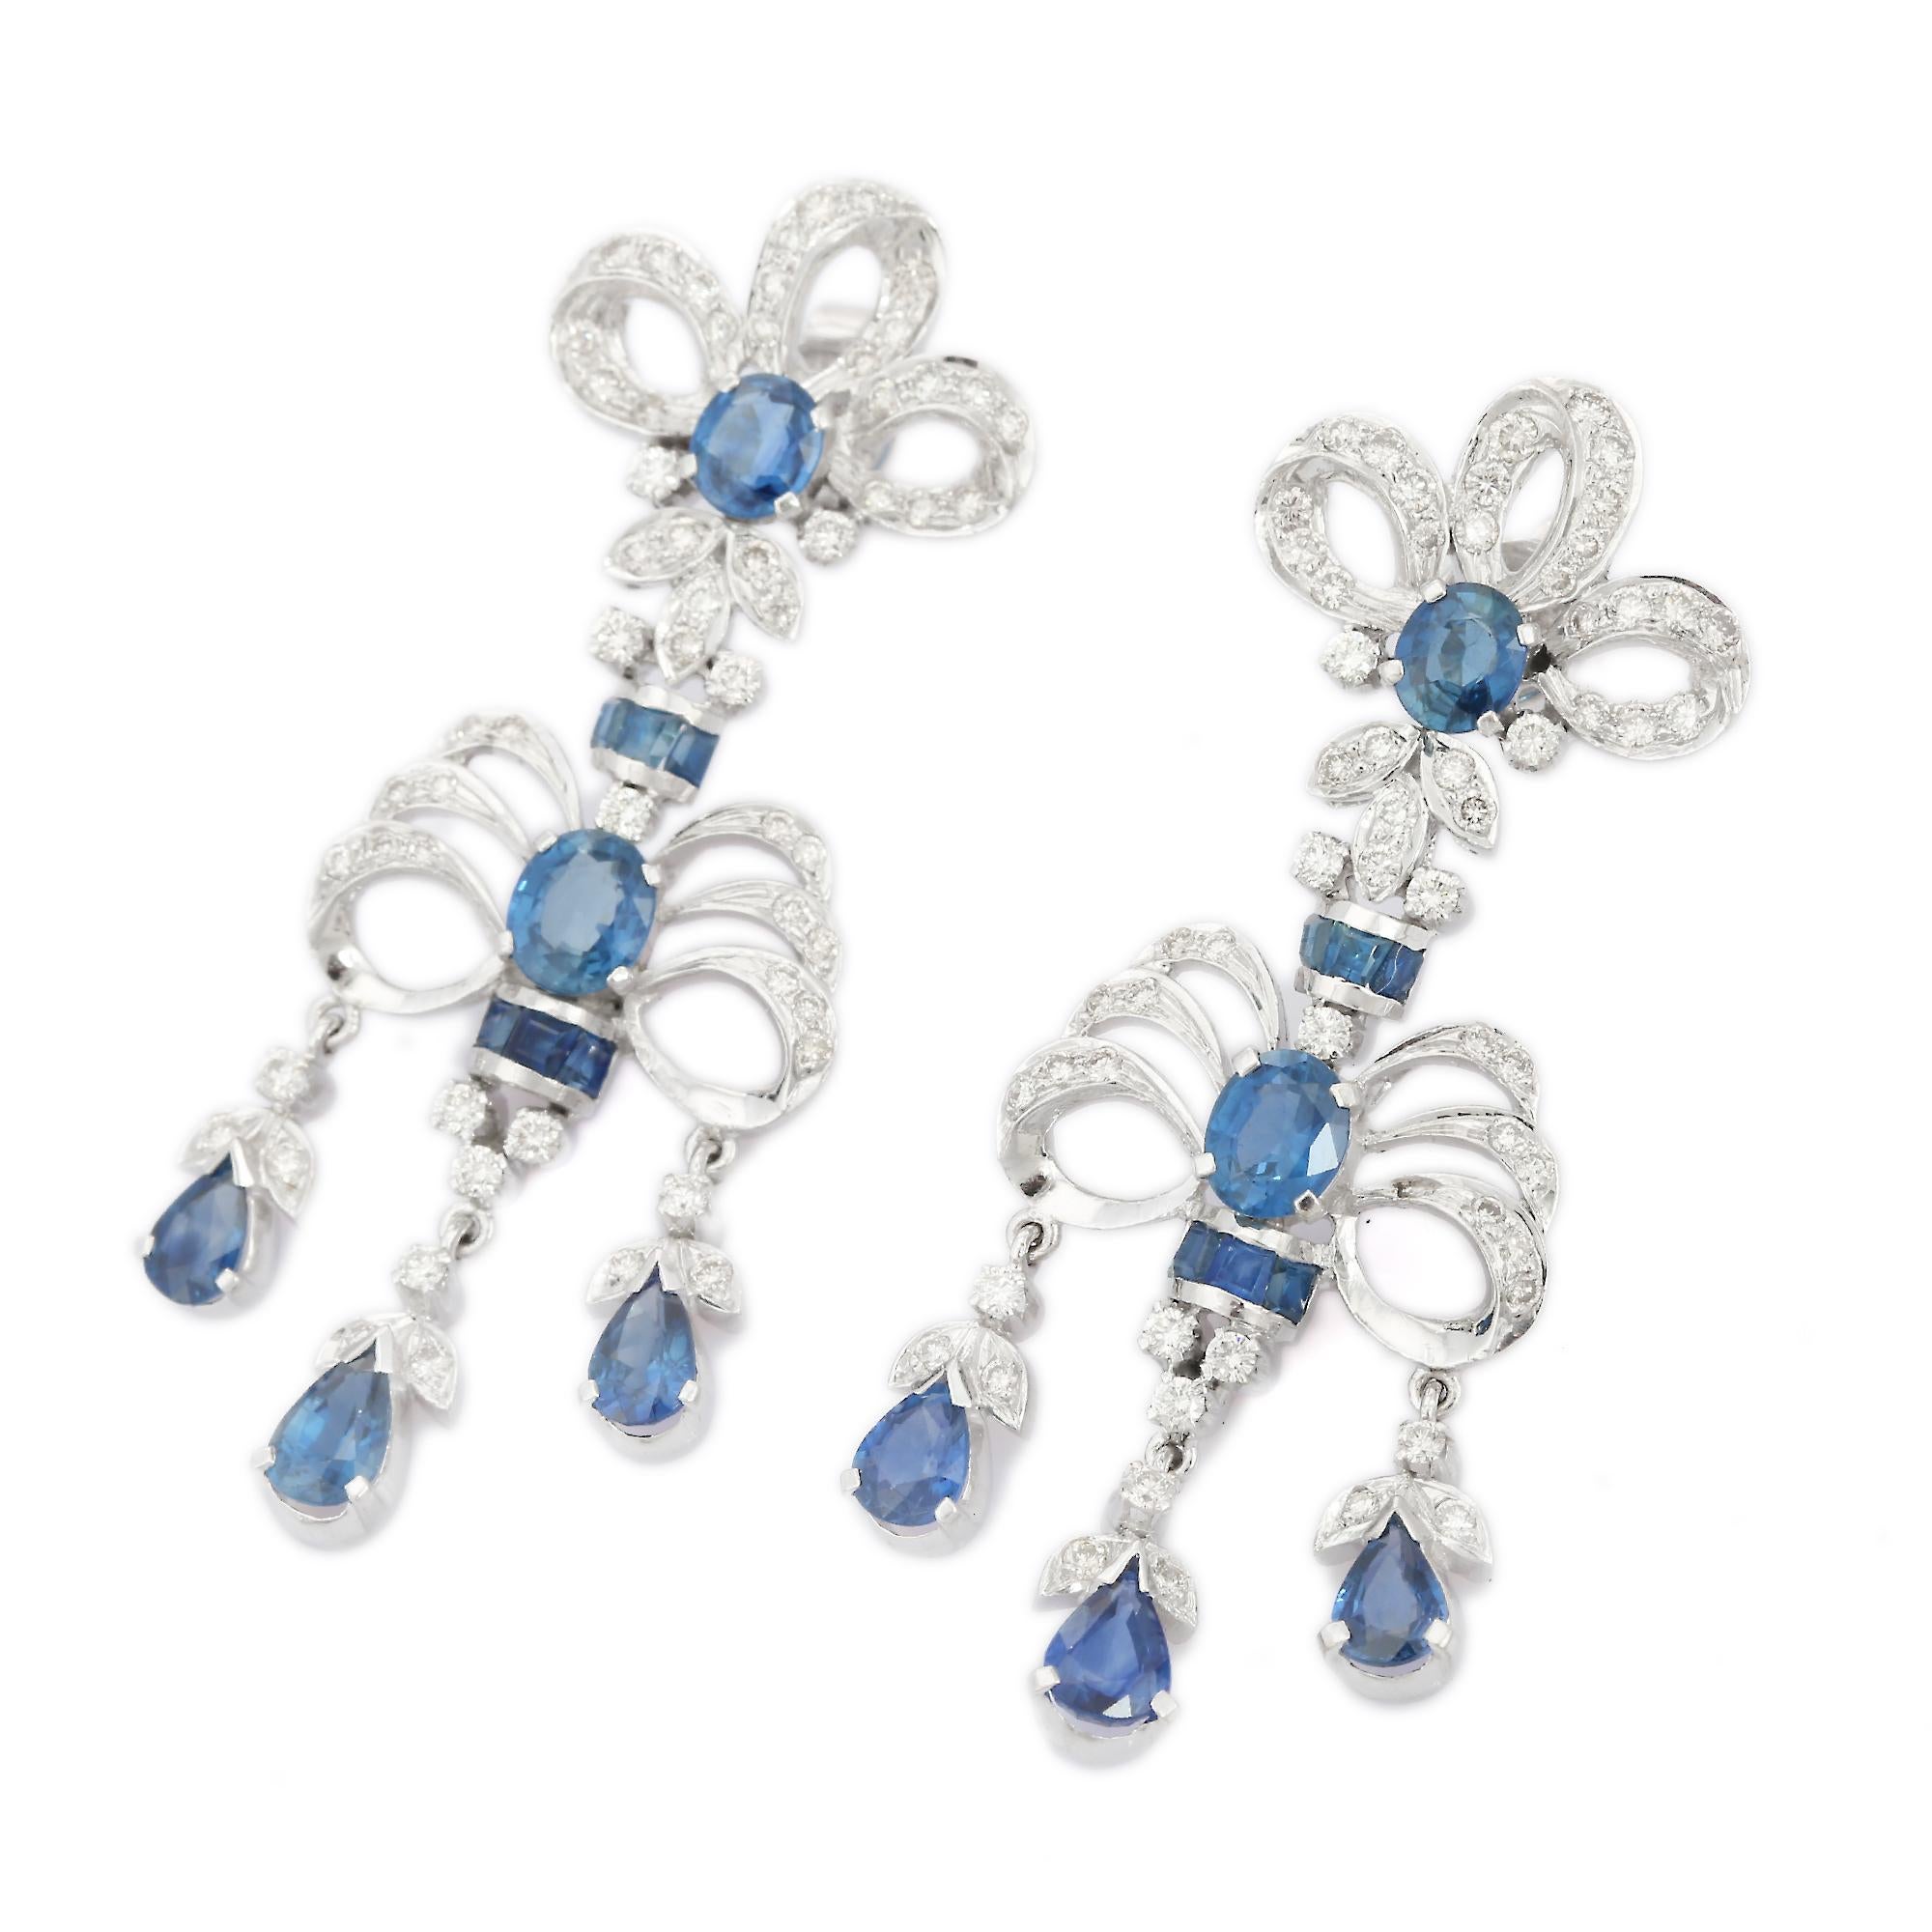 Feine Ohrringe mit blauem Saphir und Diamanten aus 18 Karat Gold, um mit Ihrem Look ein Statement zu setzen. Um mit Ihrem Look ein Statement zu setzen, brauchen Sie auffällige Ohrringe, die baumeln. Diese Ohrringe mit Saphiren im Mix-Schliff sorgen